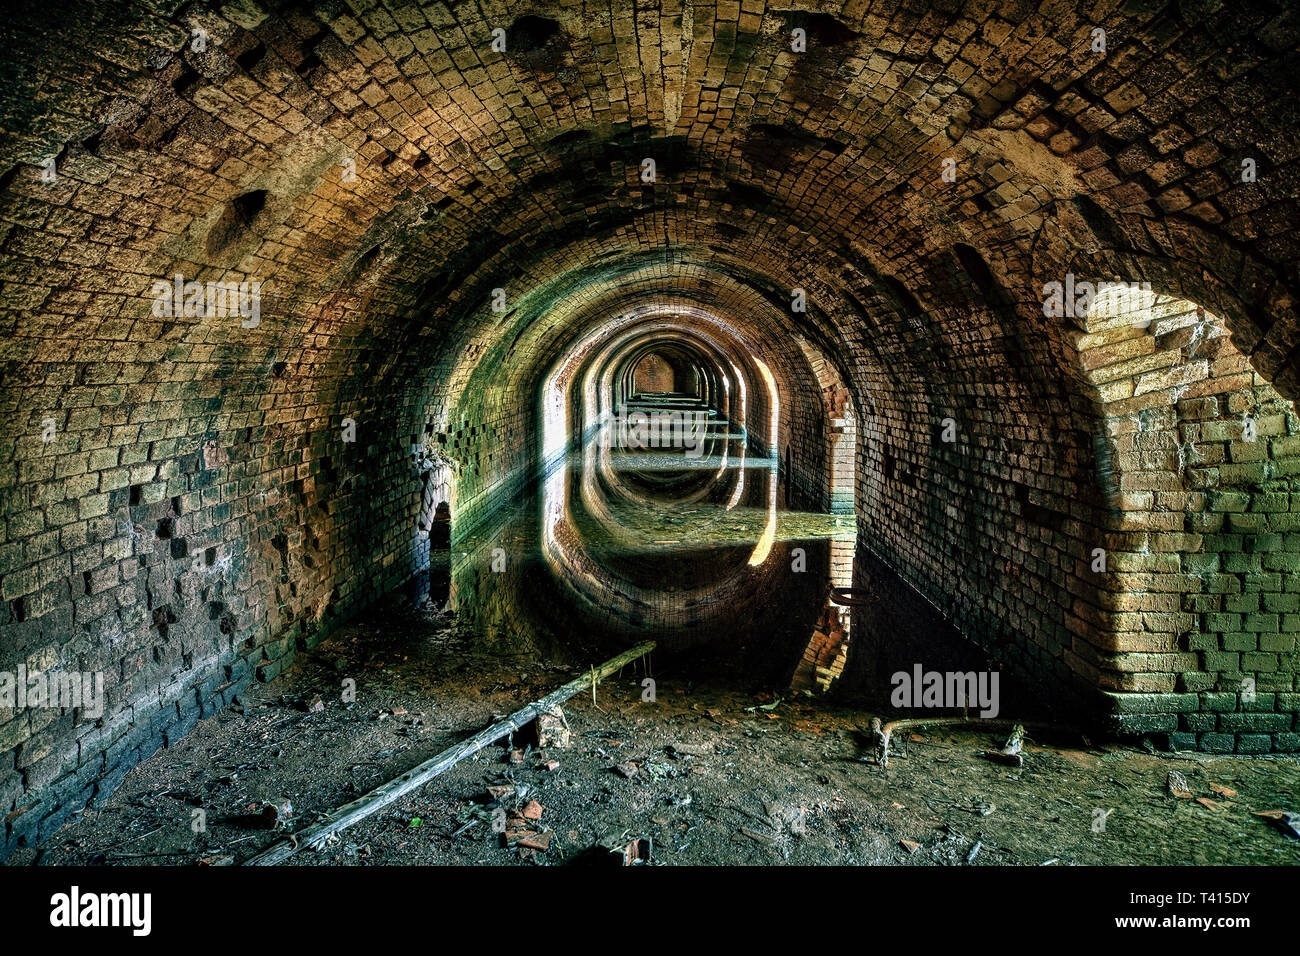 Endroits perdus - catacombes souterraines Banque D'Images